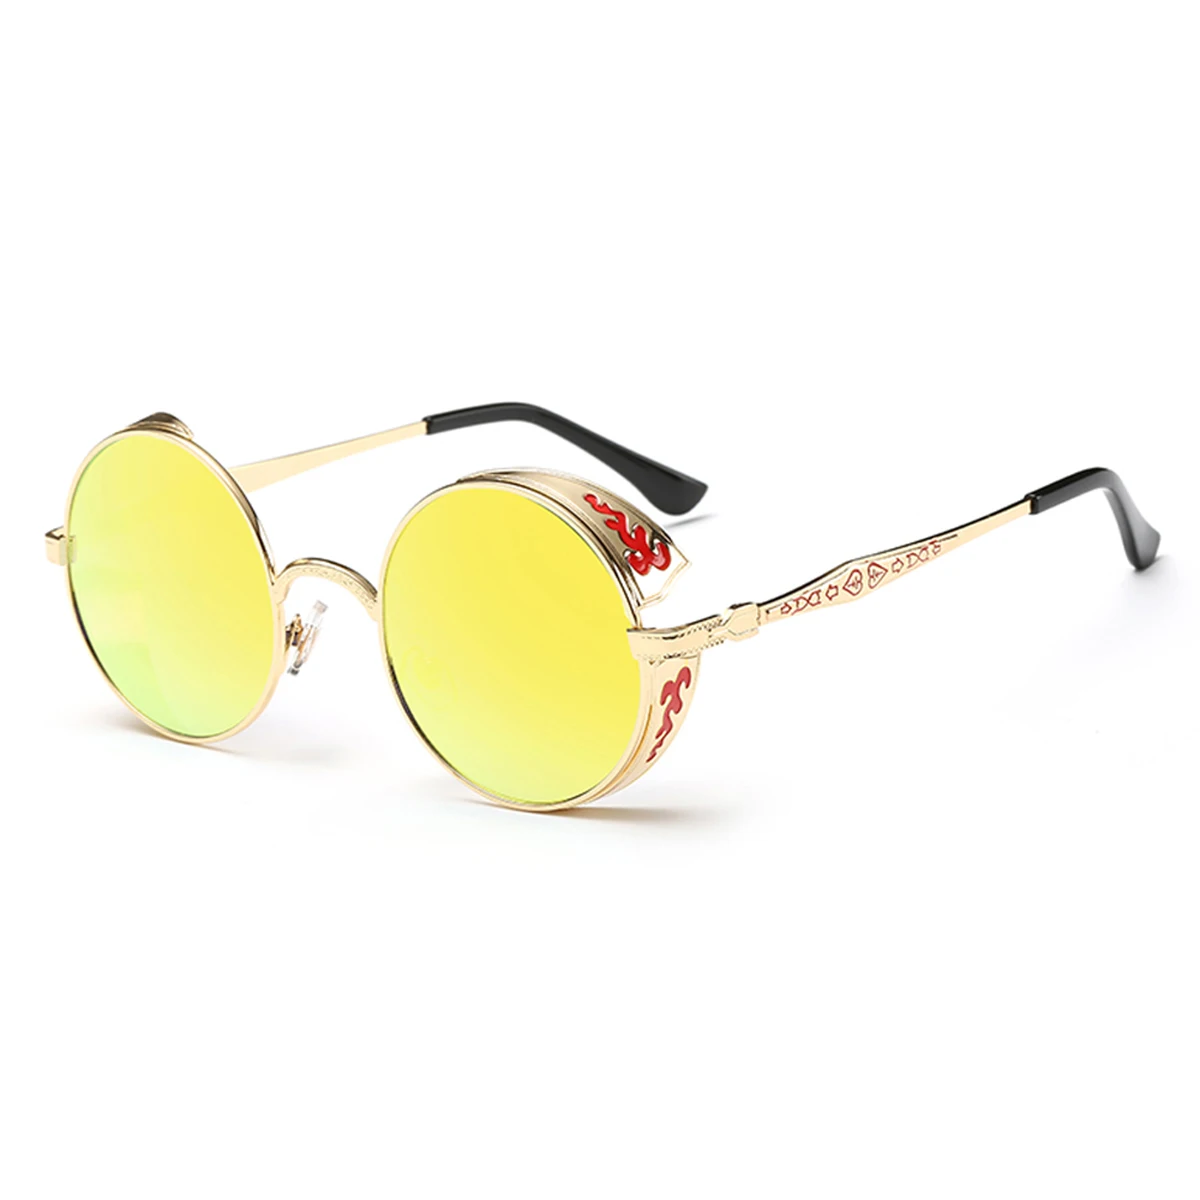 Унисекс, Ретро стиль, стимпанк, Стиль Солнцезащитные круглые линзы металлическая полая рама Винтаж очки для Для мужчин Для женщин солнцезащитные очки для вождения